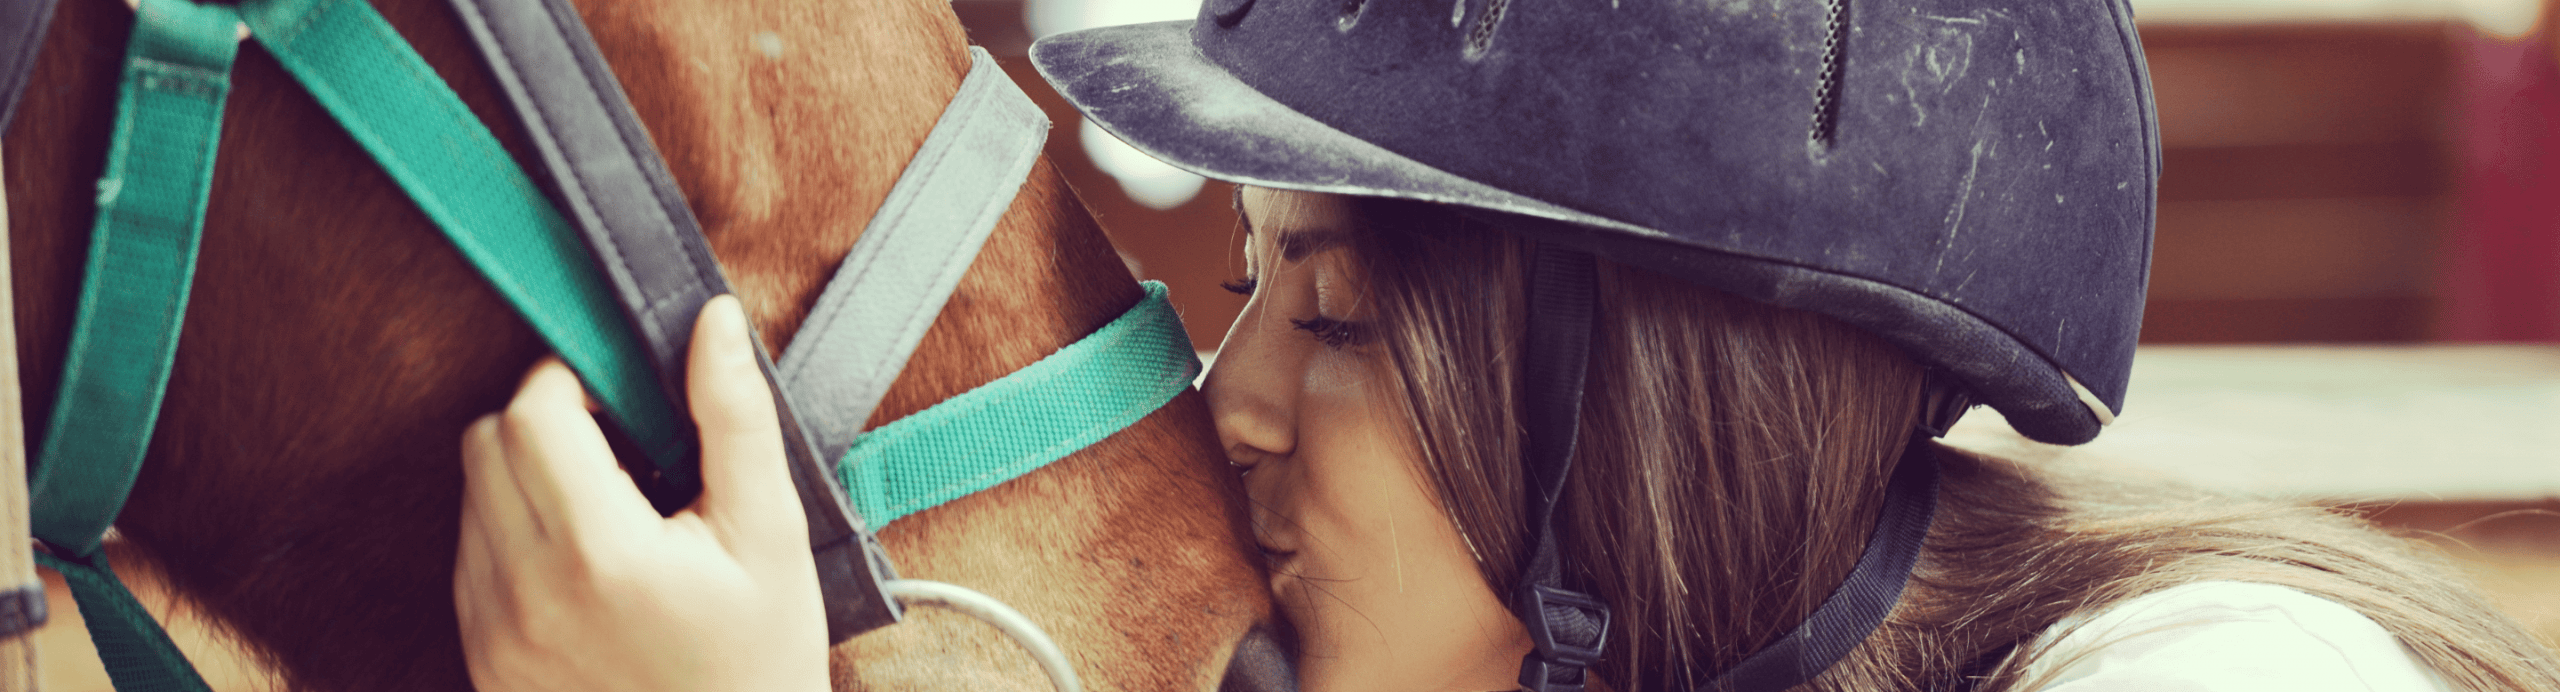 paardenvoer kopen online bij Equilin